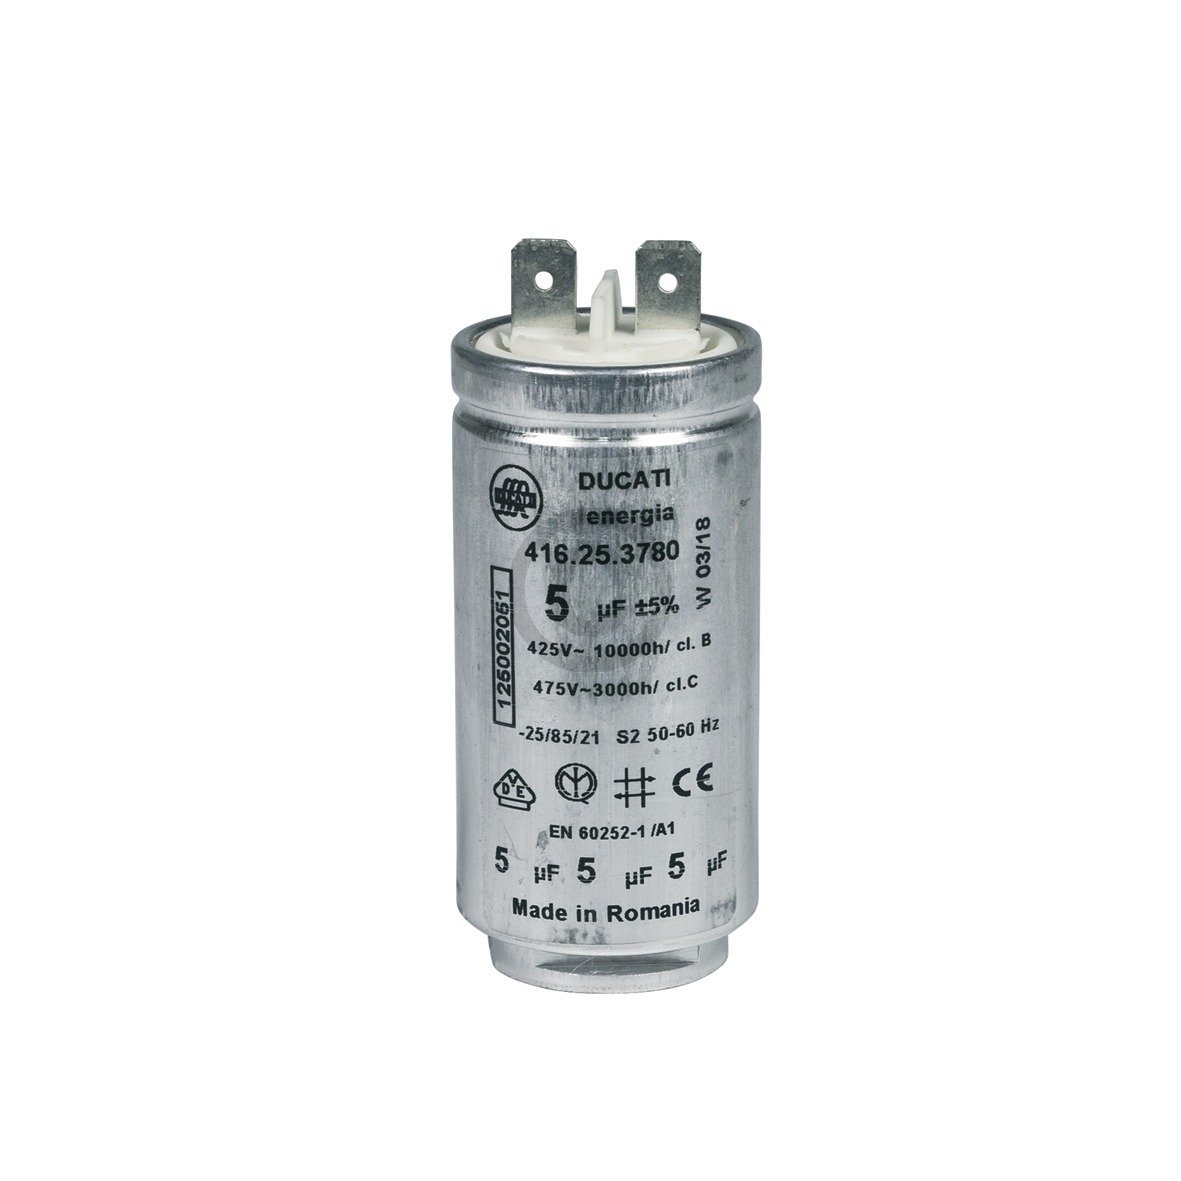 Kondensator Electrolux 125002051/6 5ÂµF 425/475V ti passer til Original